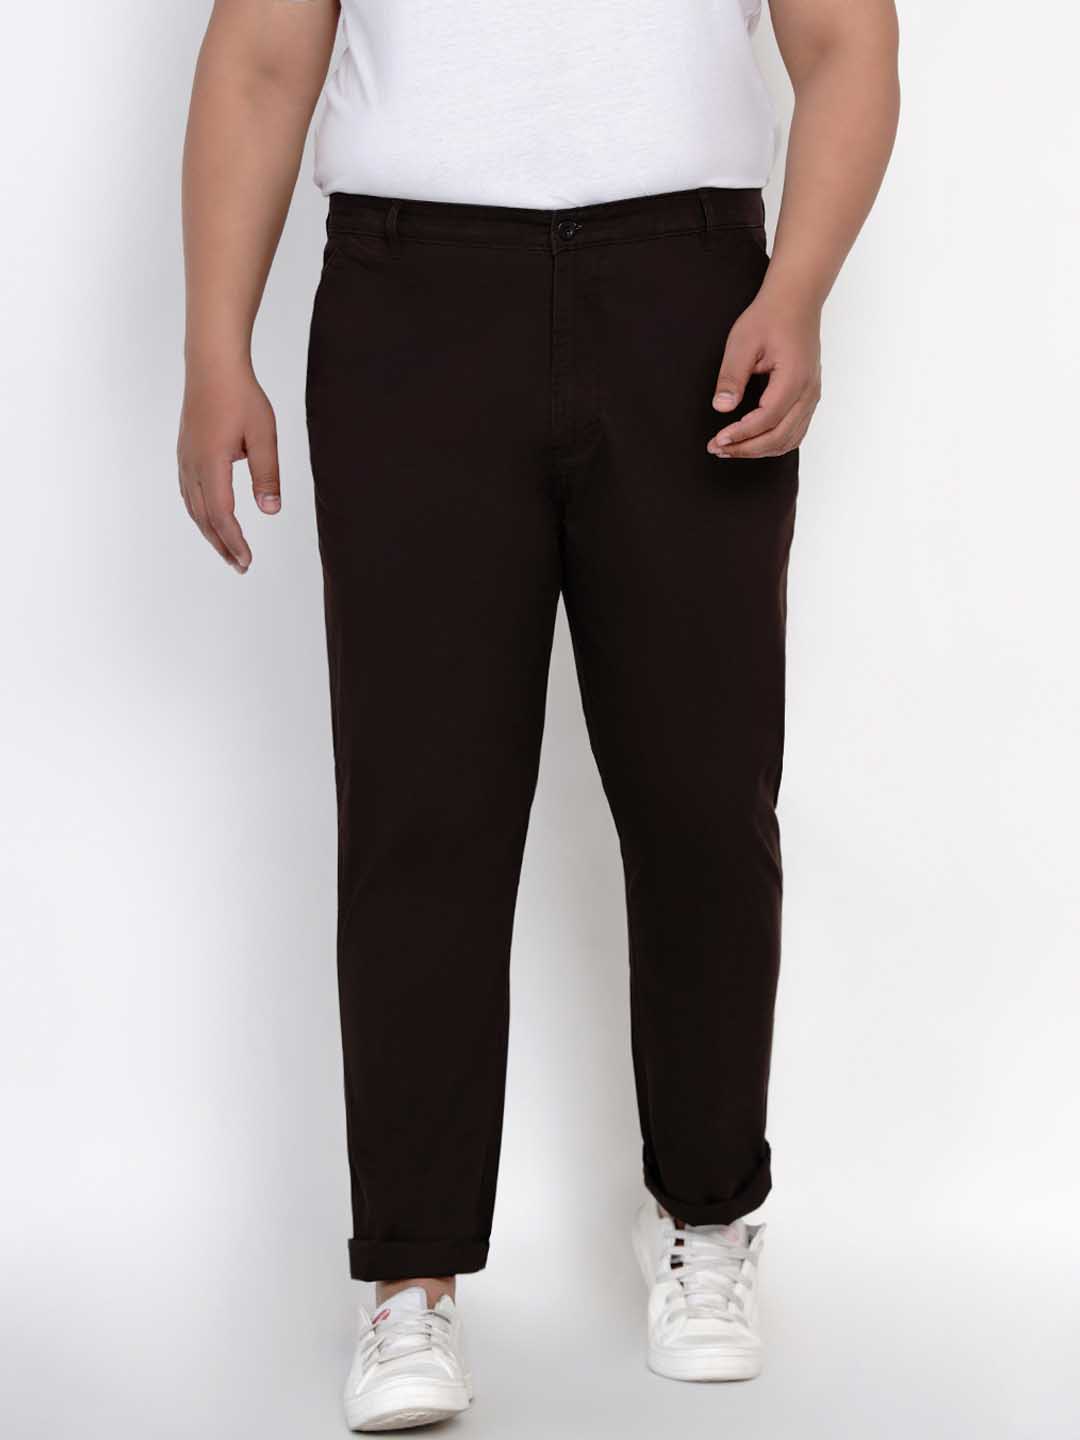 bottomwear/trousers/JPTR2195H/jptr2195h-1.jpg